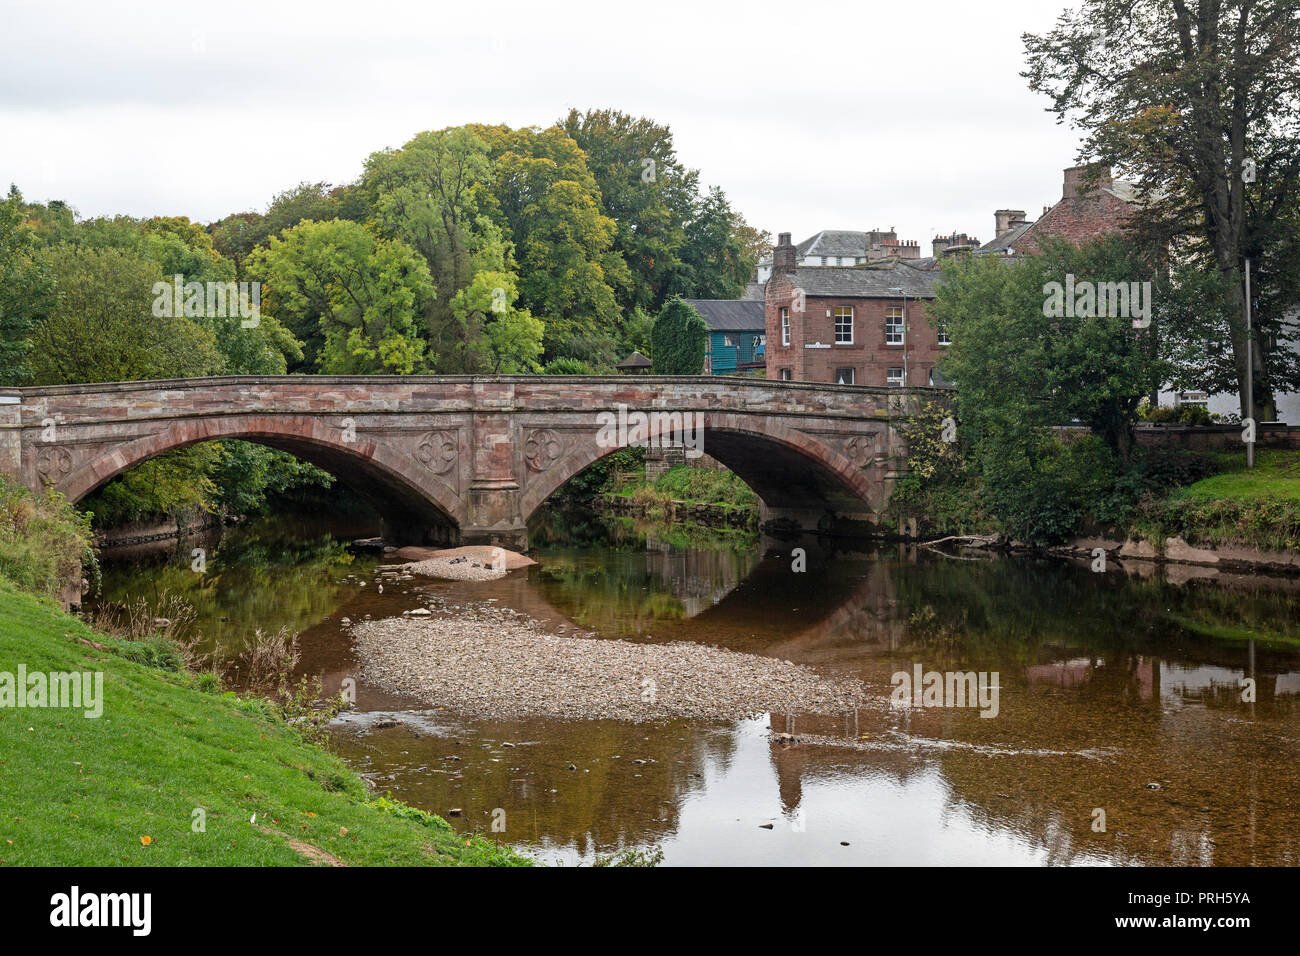 Le pont Saint-laurent, construit en 1889, enjambant la rivière Eden, dans la ville de Appleby-in-Westmorland dans le comté de Cumbrie en Angleterre. Banque D'Images